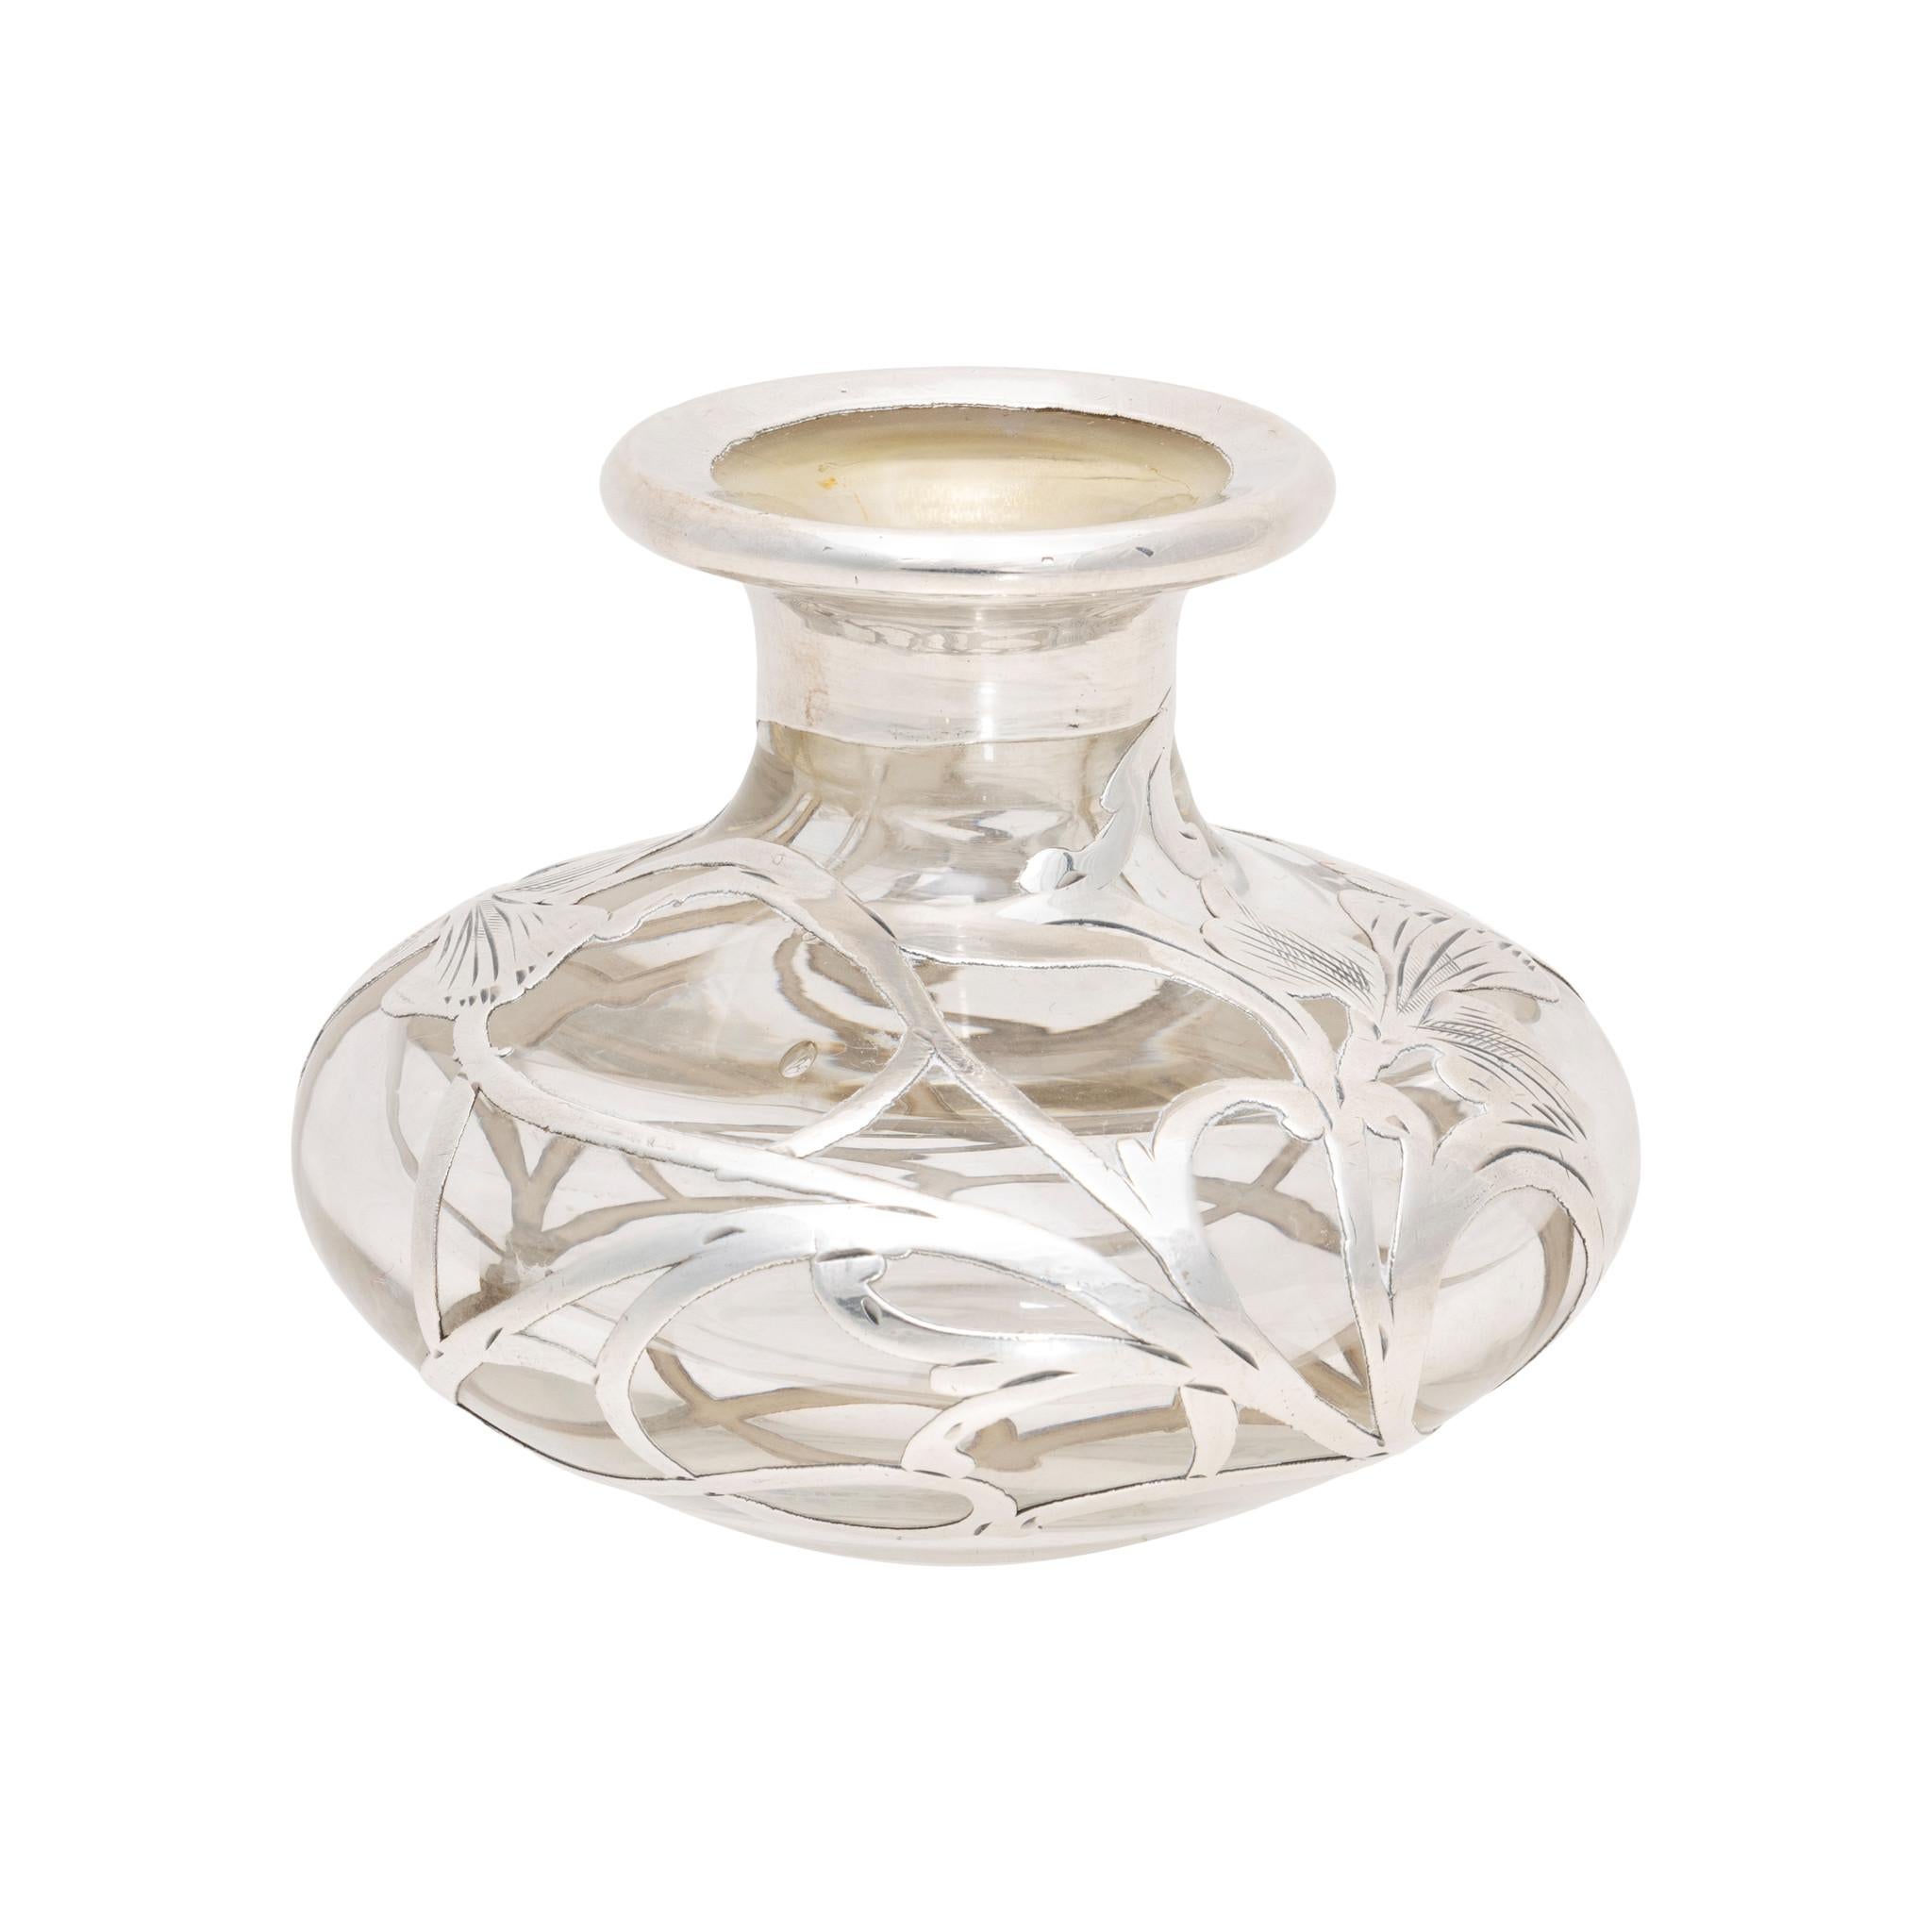 Parfümflakon aus Glas mit Silberauflage von Alvin. Mit klarem Glas und Jugendstil-Silberarbeiten, die zwei Schwertlilien darstellen. In der Mitte ist ein Monogramm mit einem 